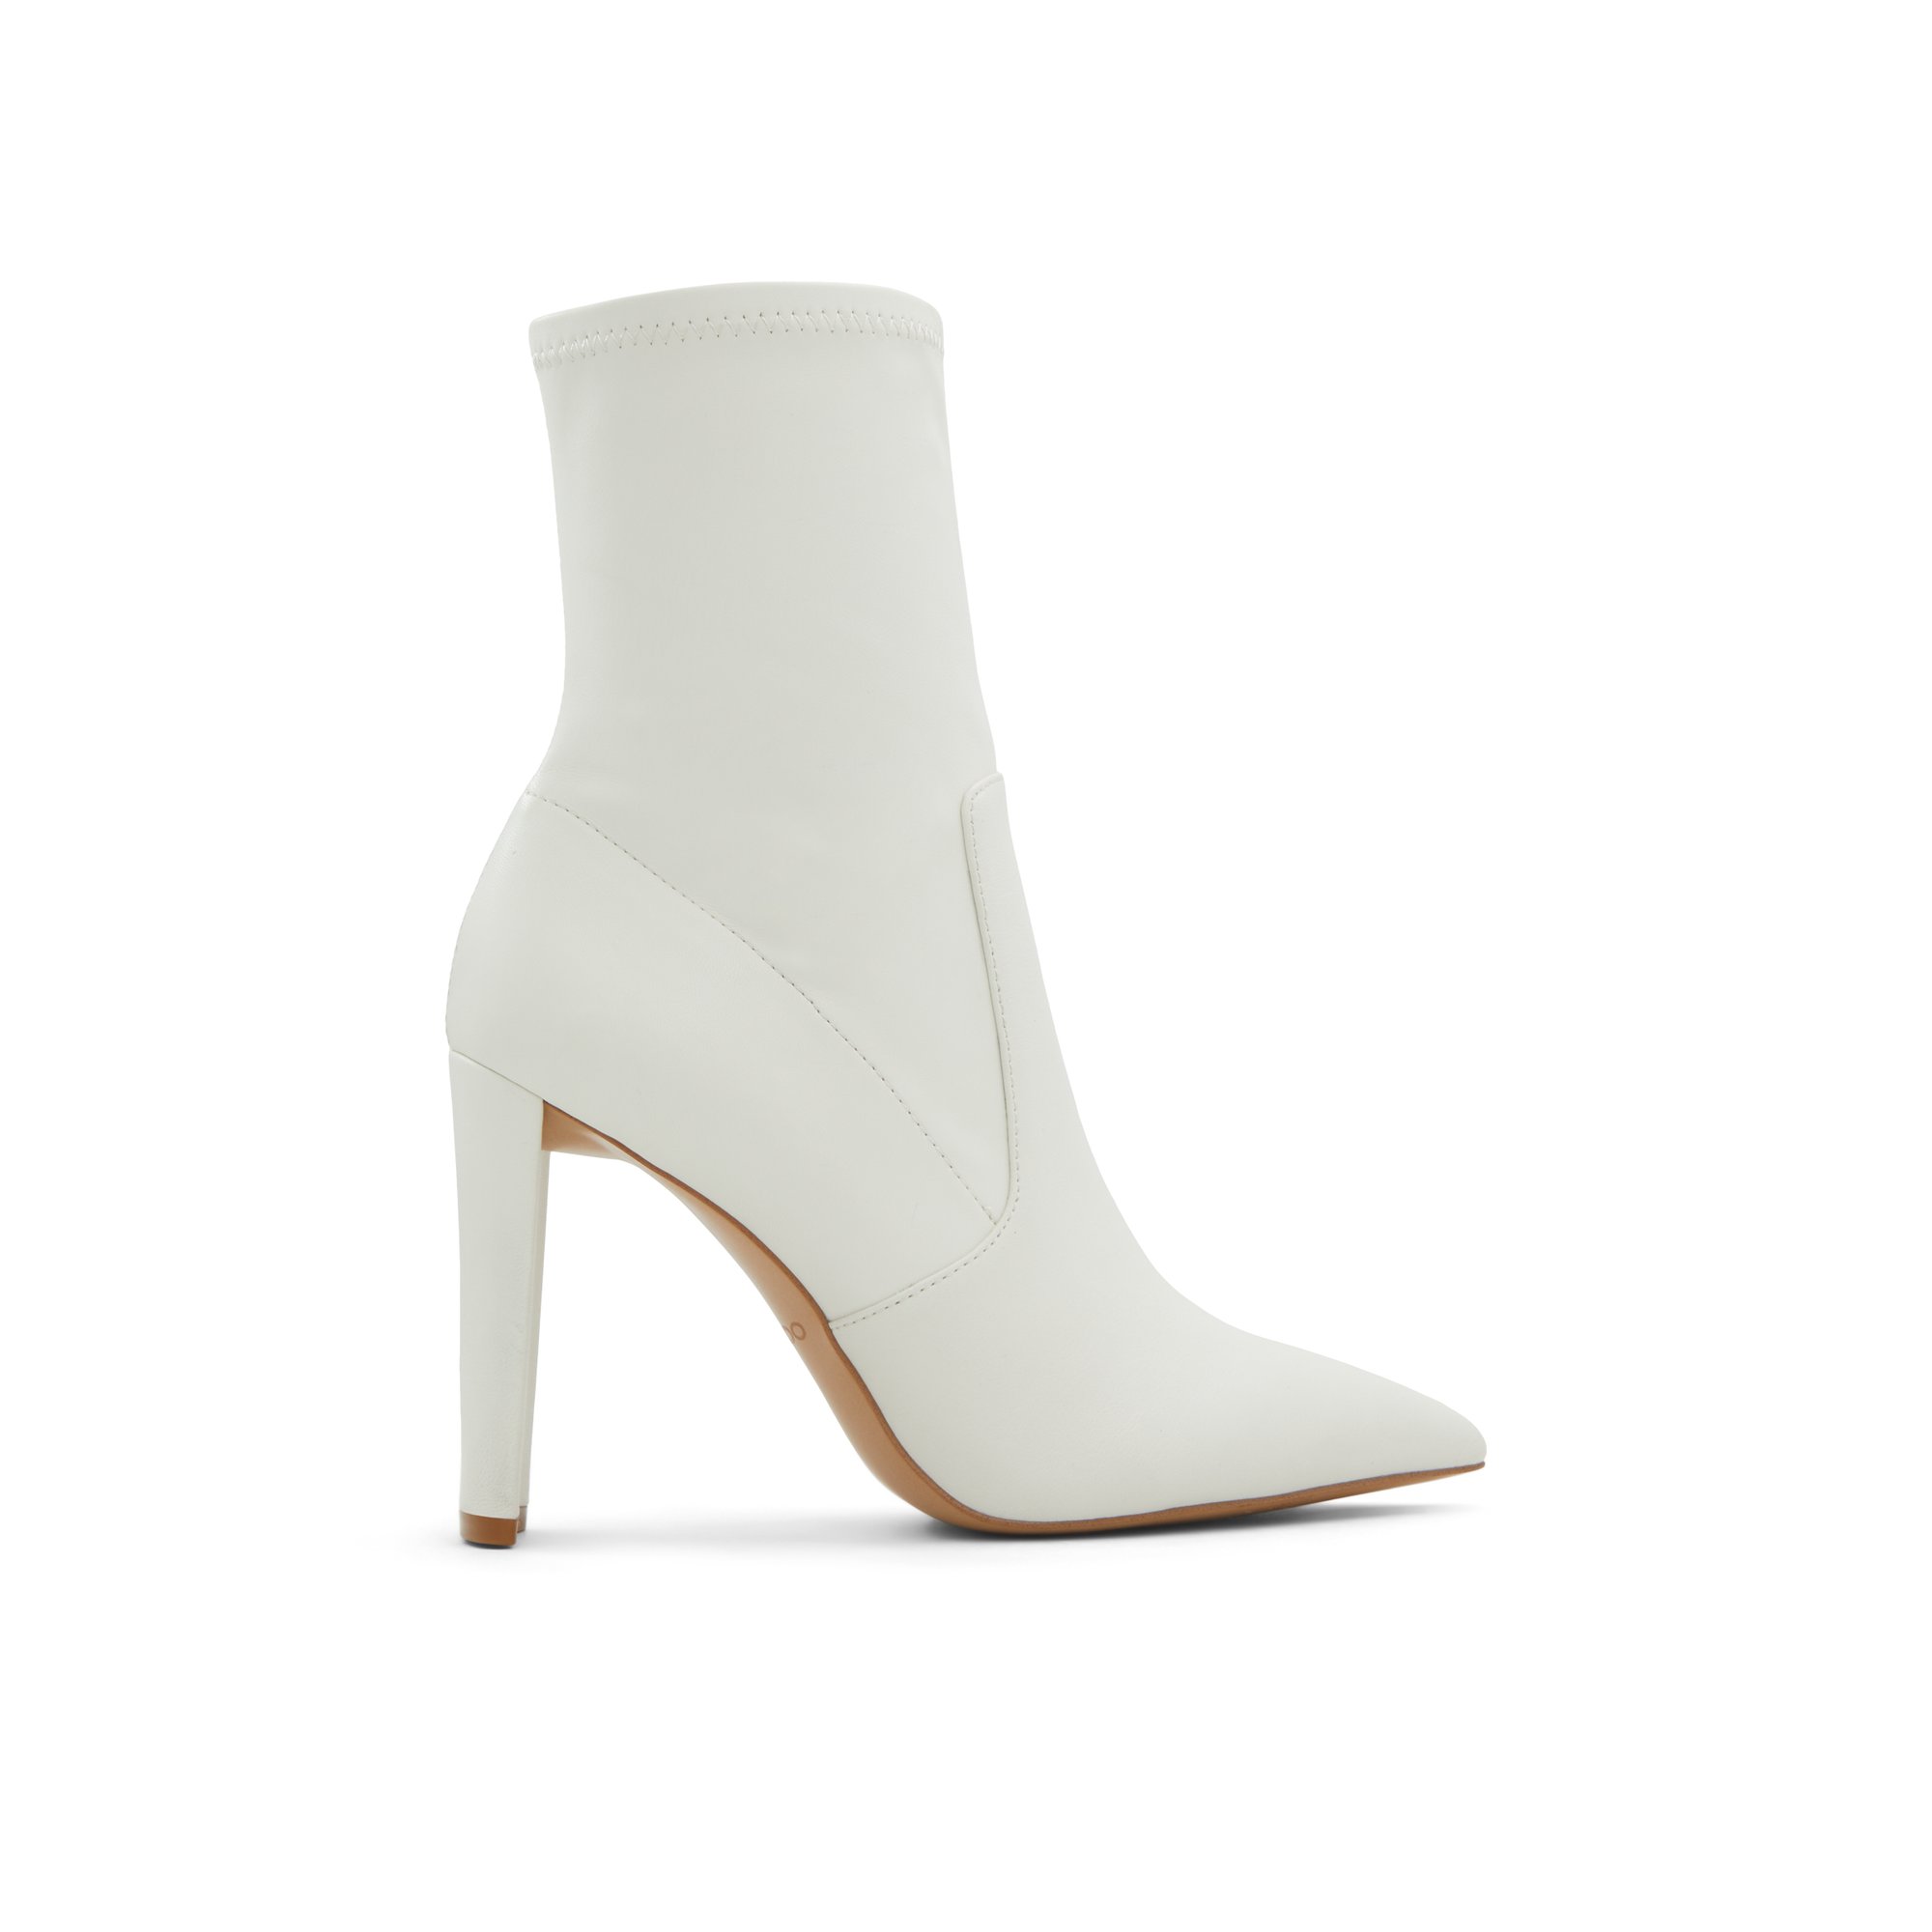 ALDO Dove - Women's Boots Dress - White